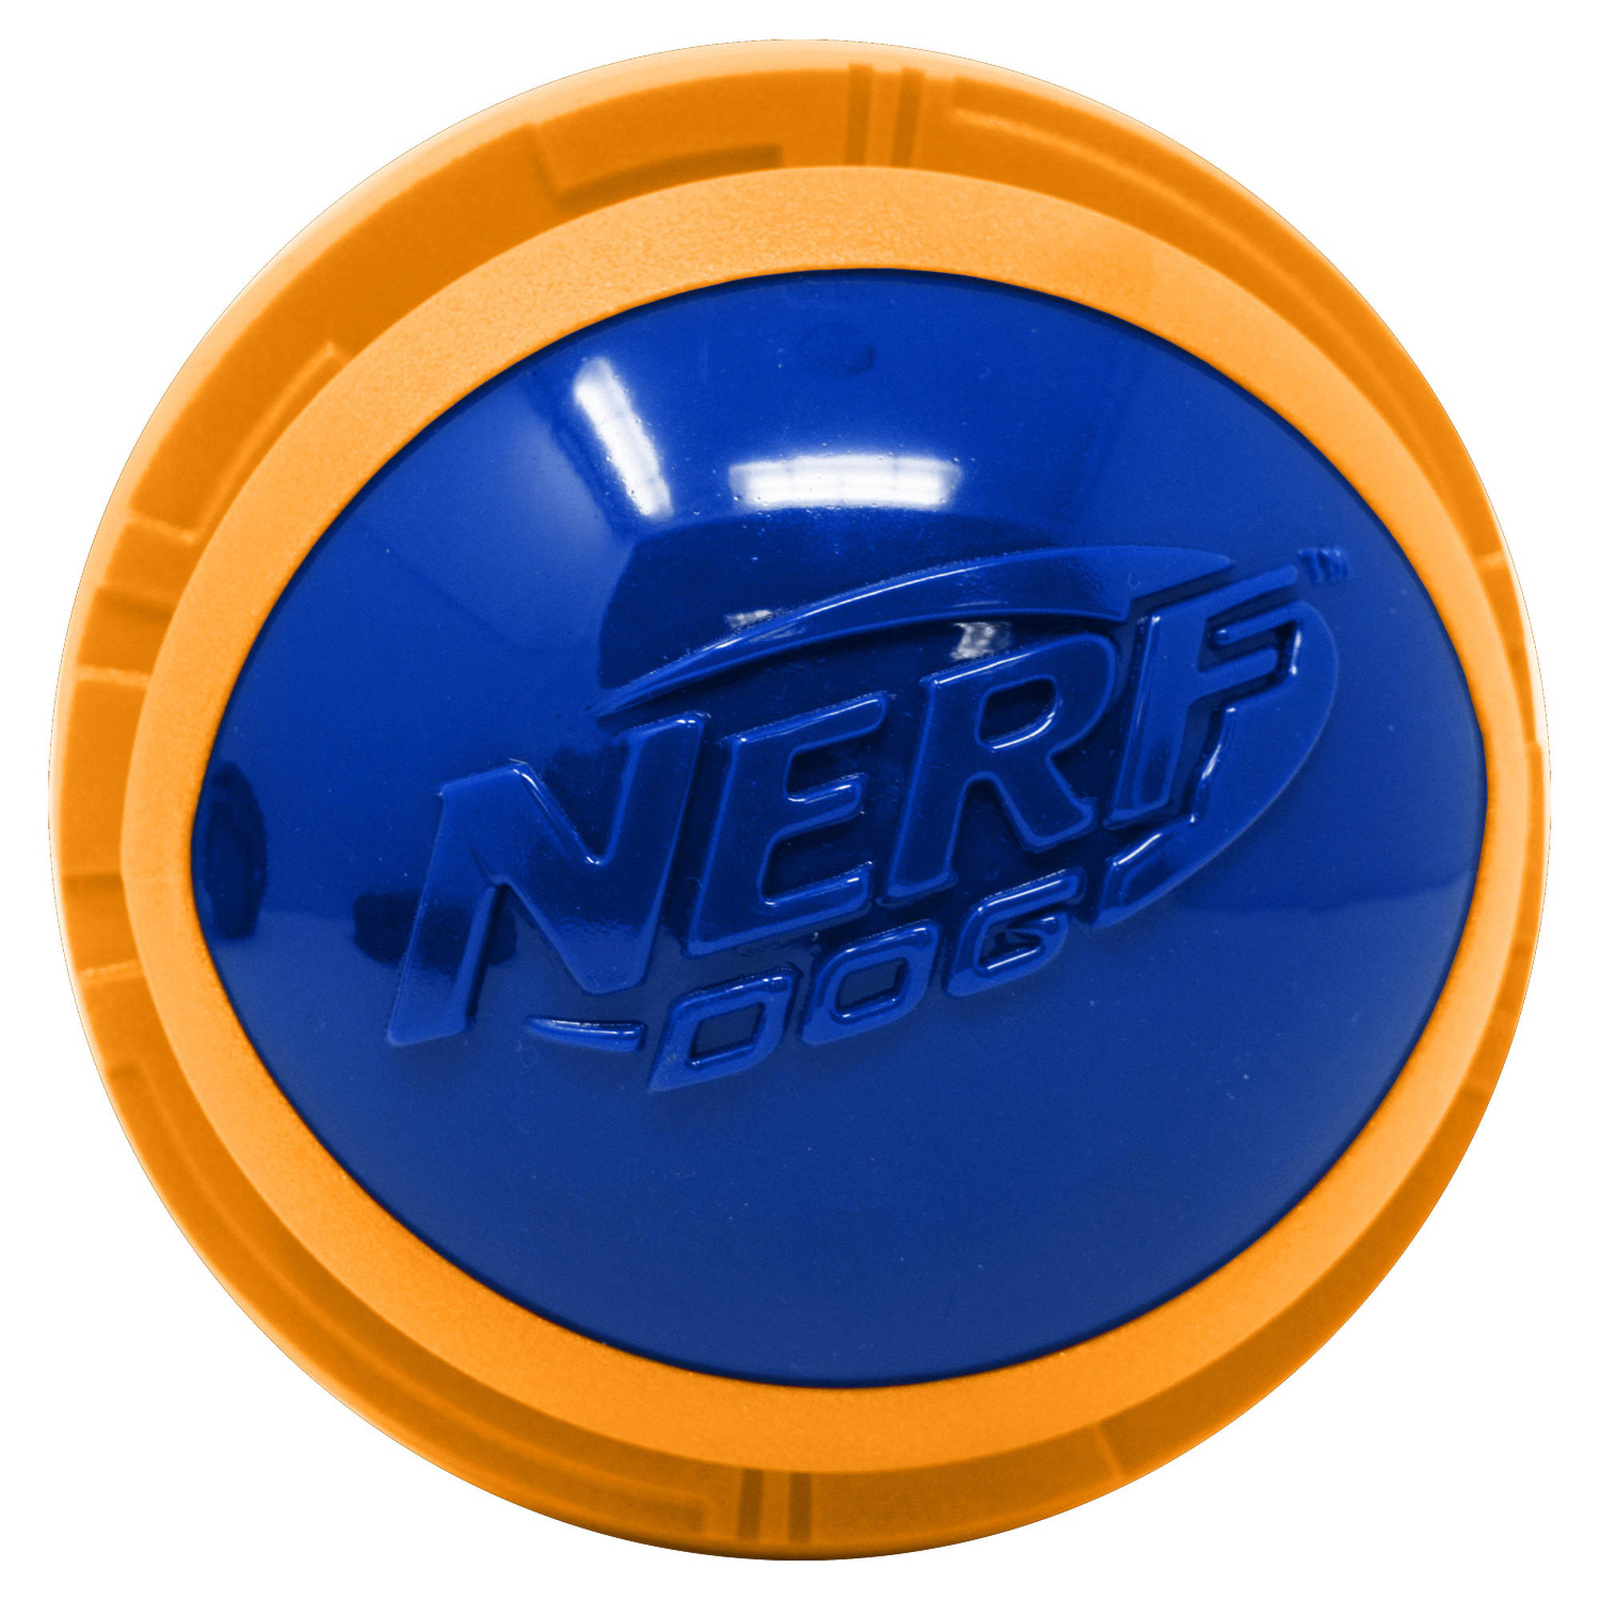 Nerf Nerf мяч из вспененной резины и термопластичной резины, 10 см (серия Мегатон), (синий/оранжевый) (380 г)